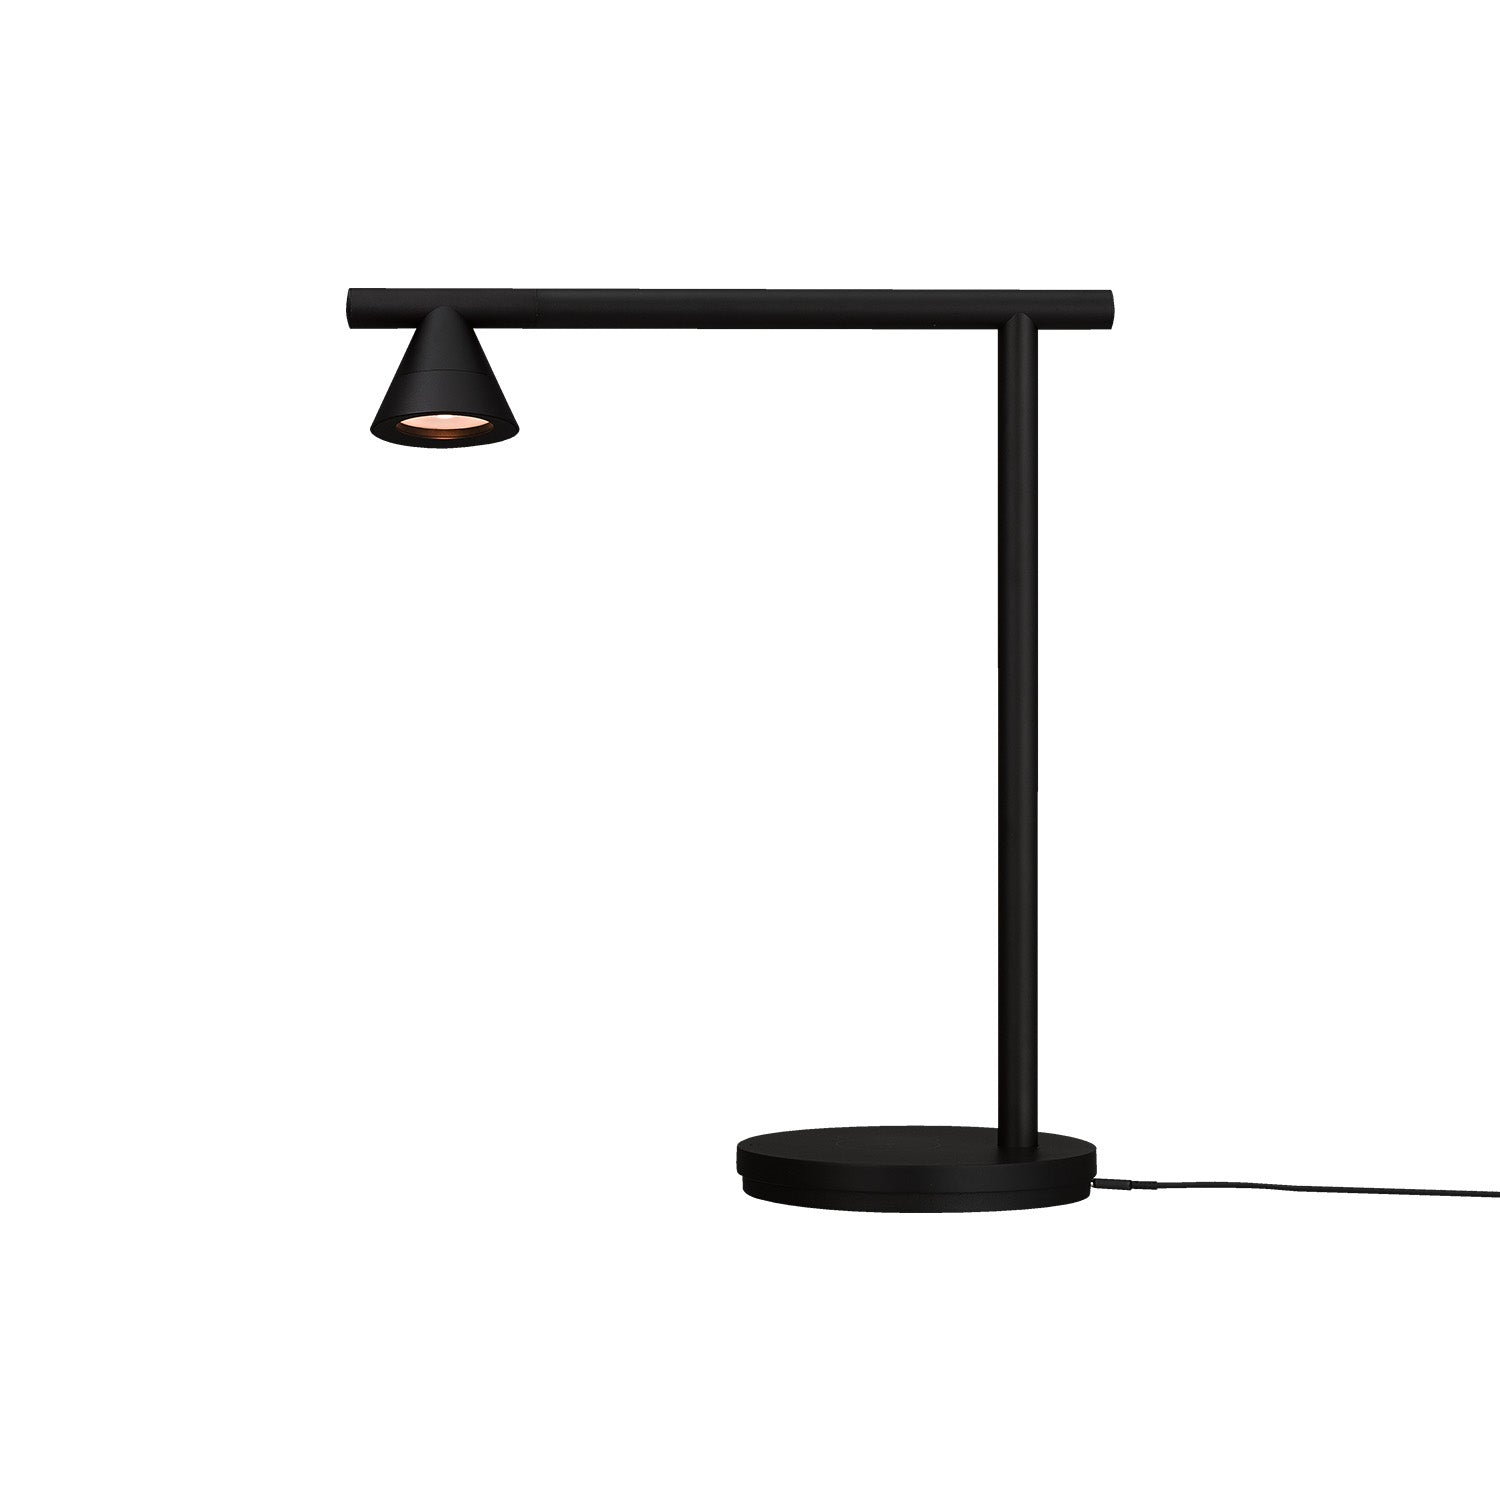 PROBE - Lampe chargeur induction sans fil design